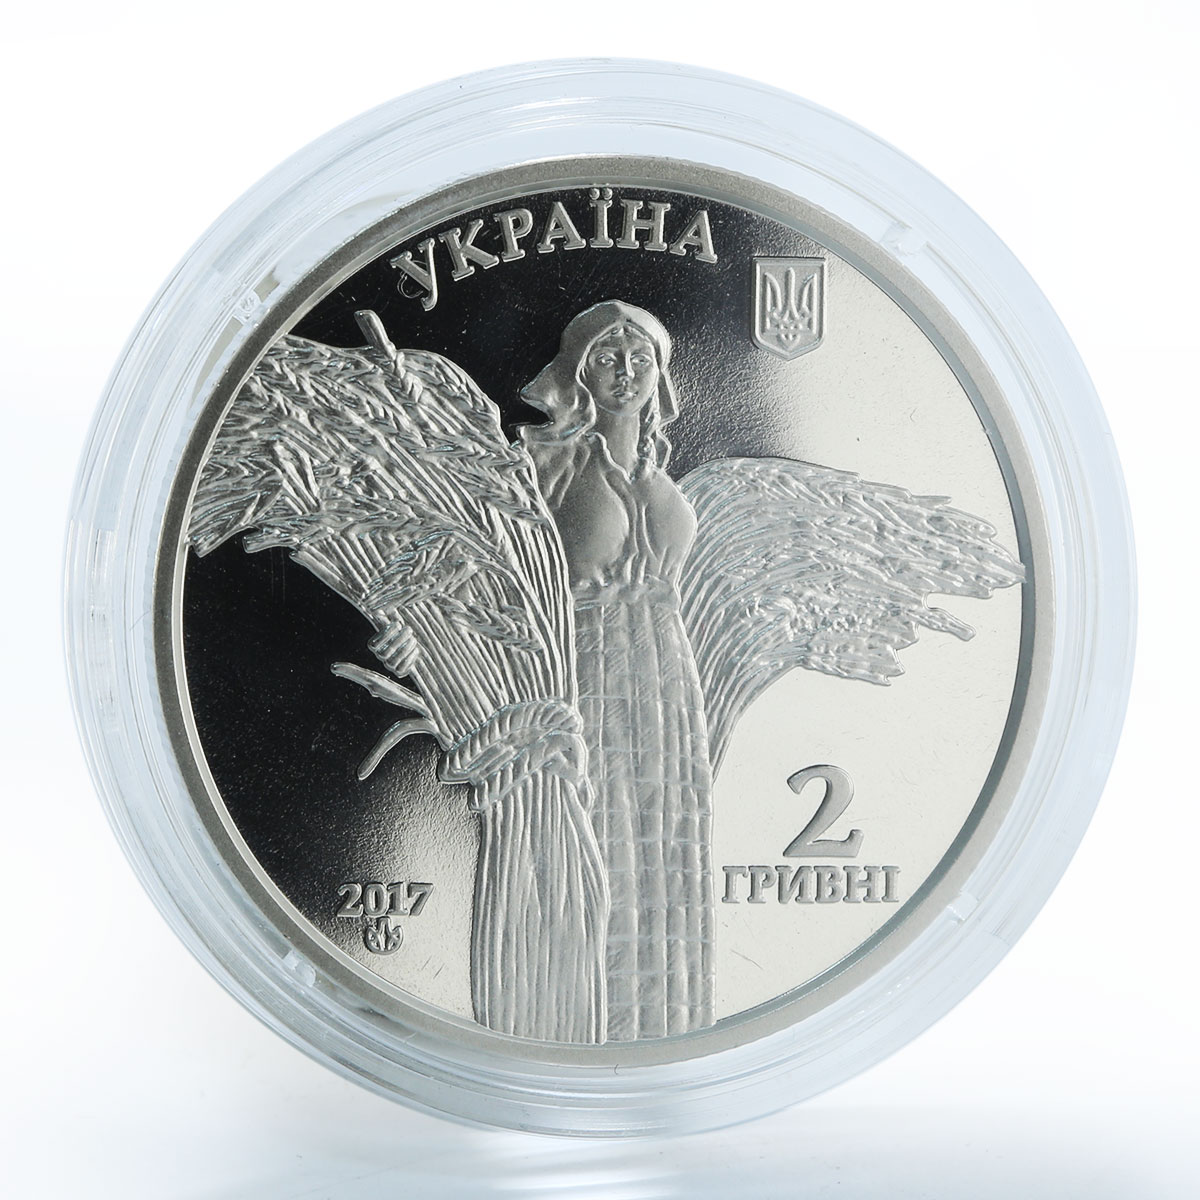 Ukraine 2 hryvnia Vasyl Remeslo Soviet agricultural scientist nickel coin 2017